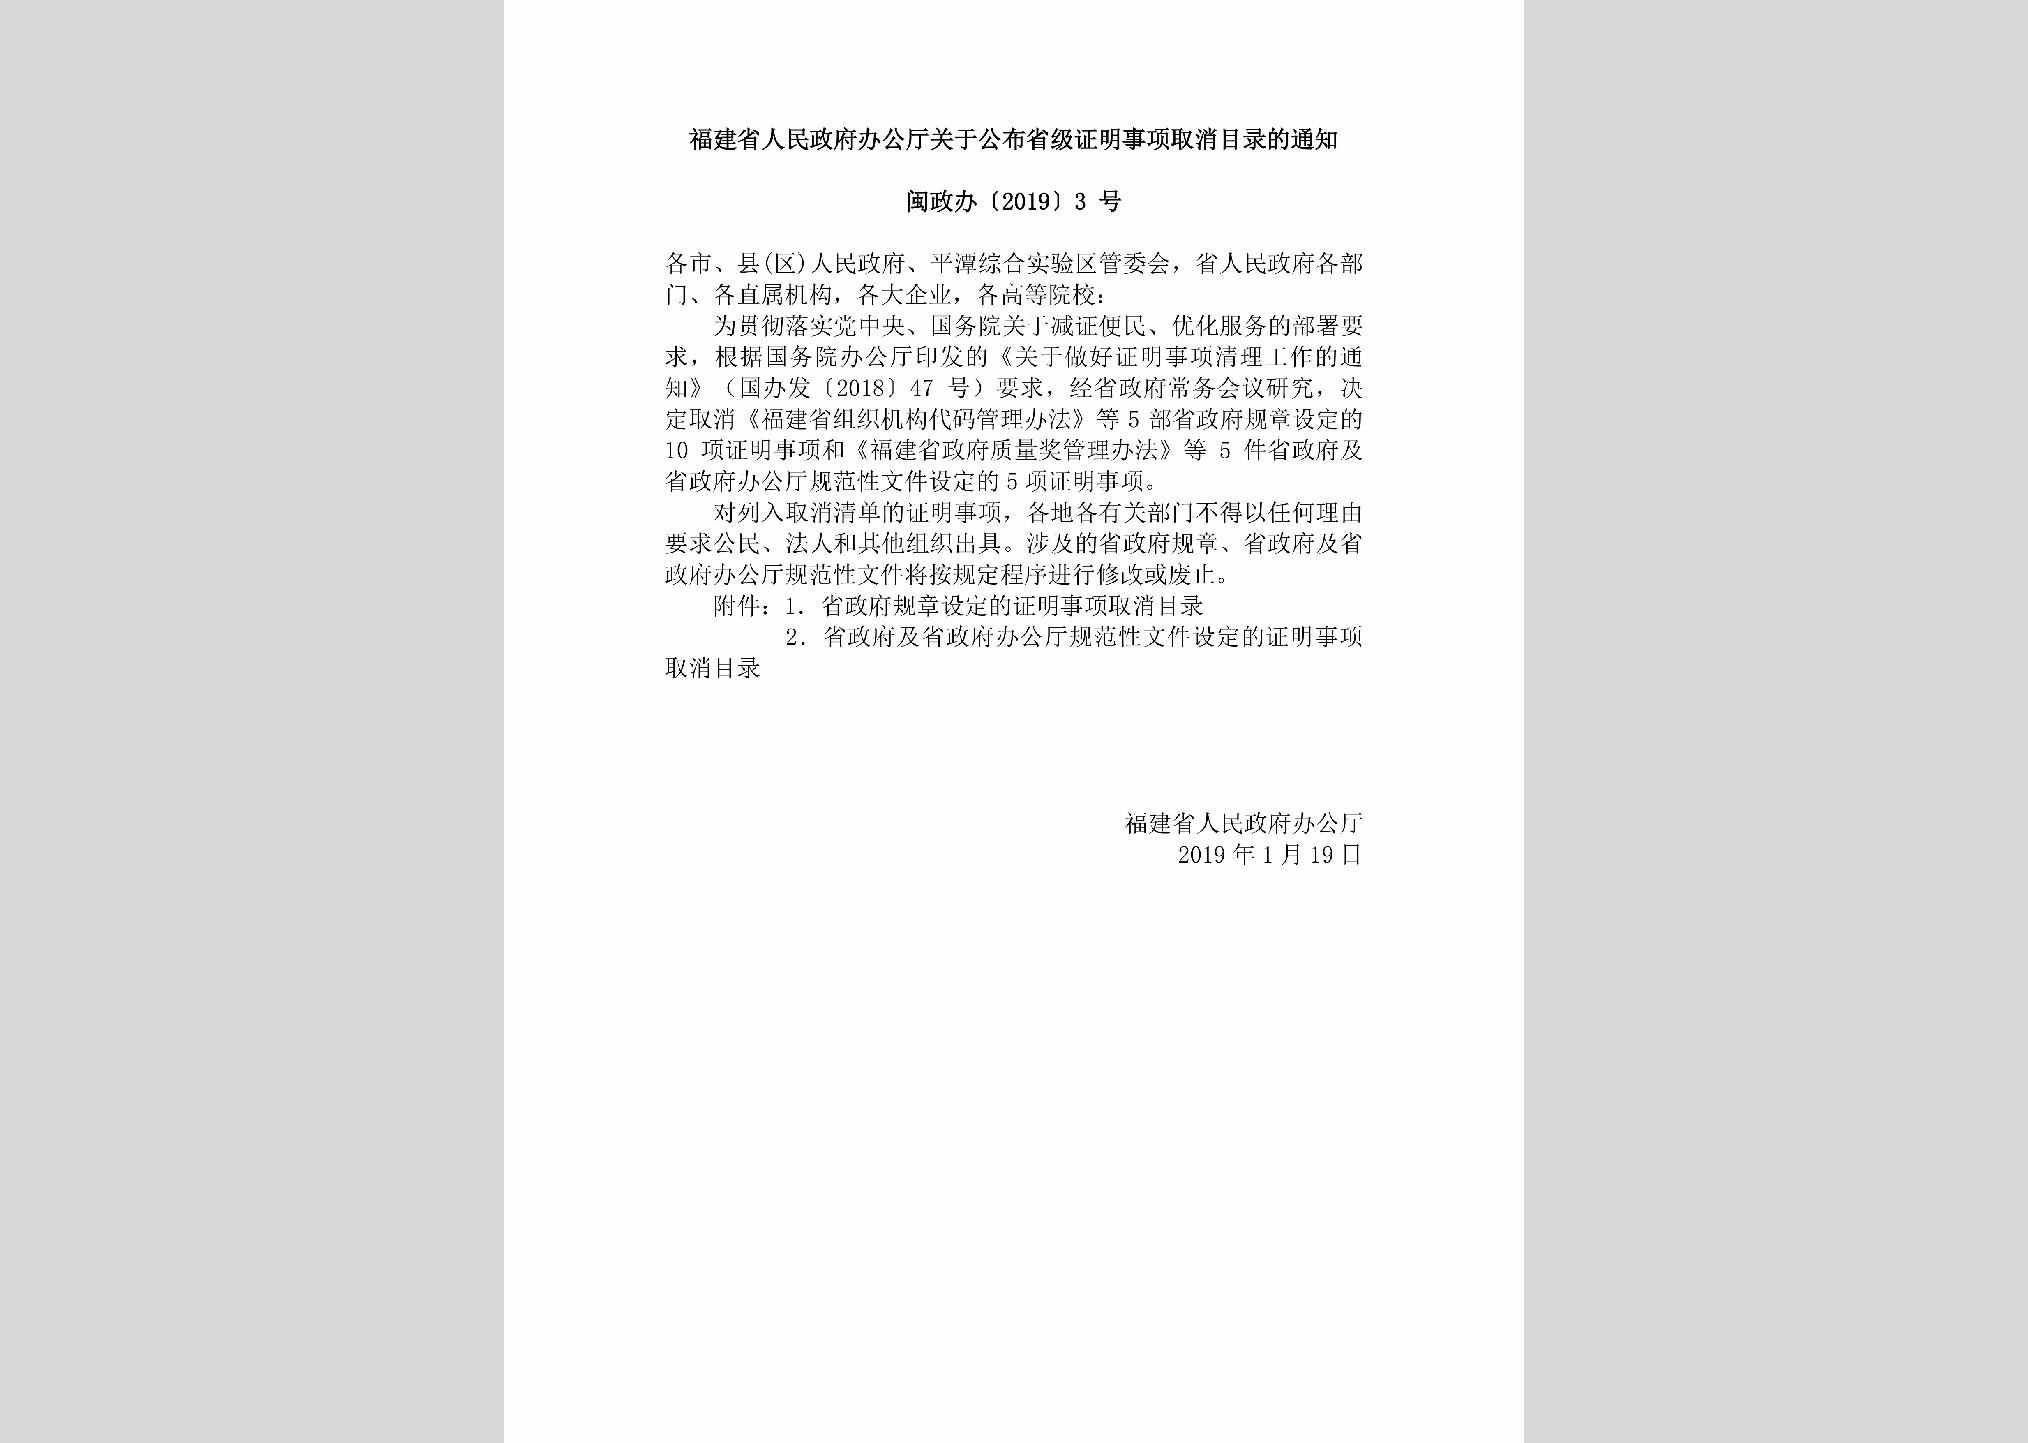 闽政办[2019]3号：福建省人民政府办公厅关于公布省级证明事项取消目录的通知